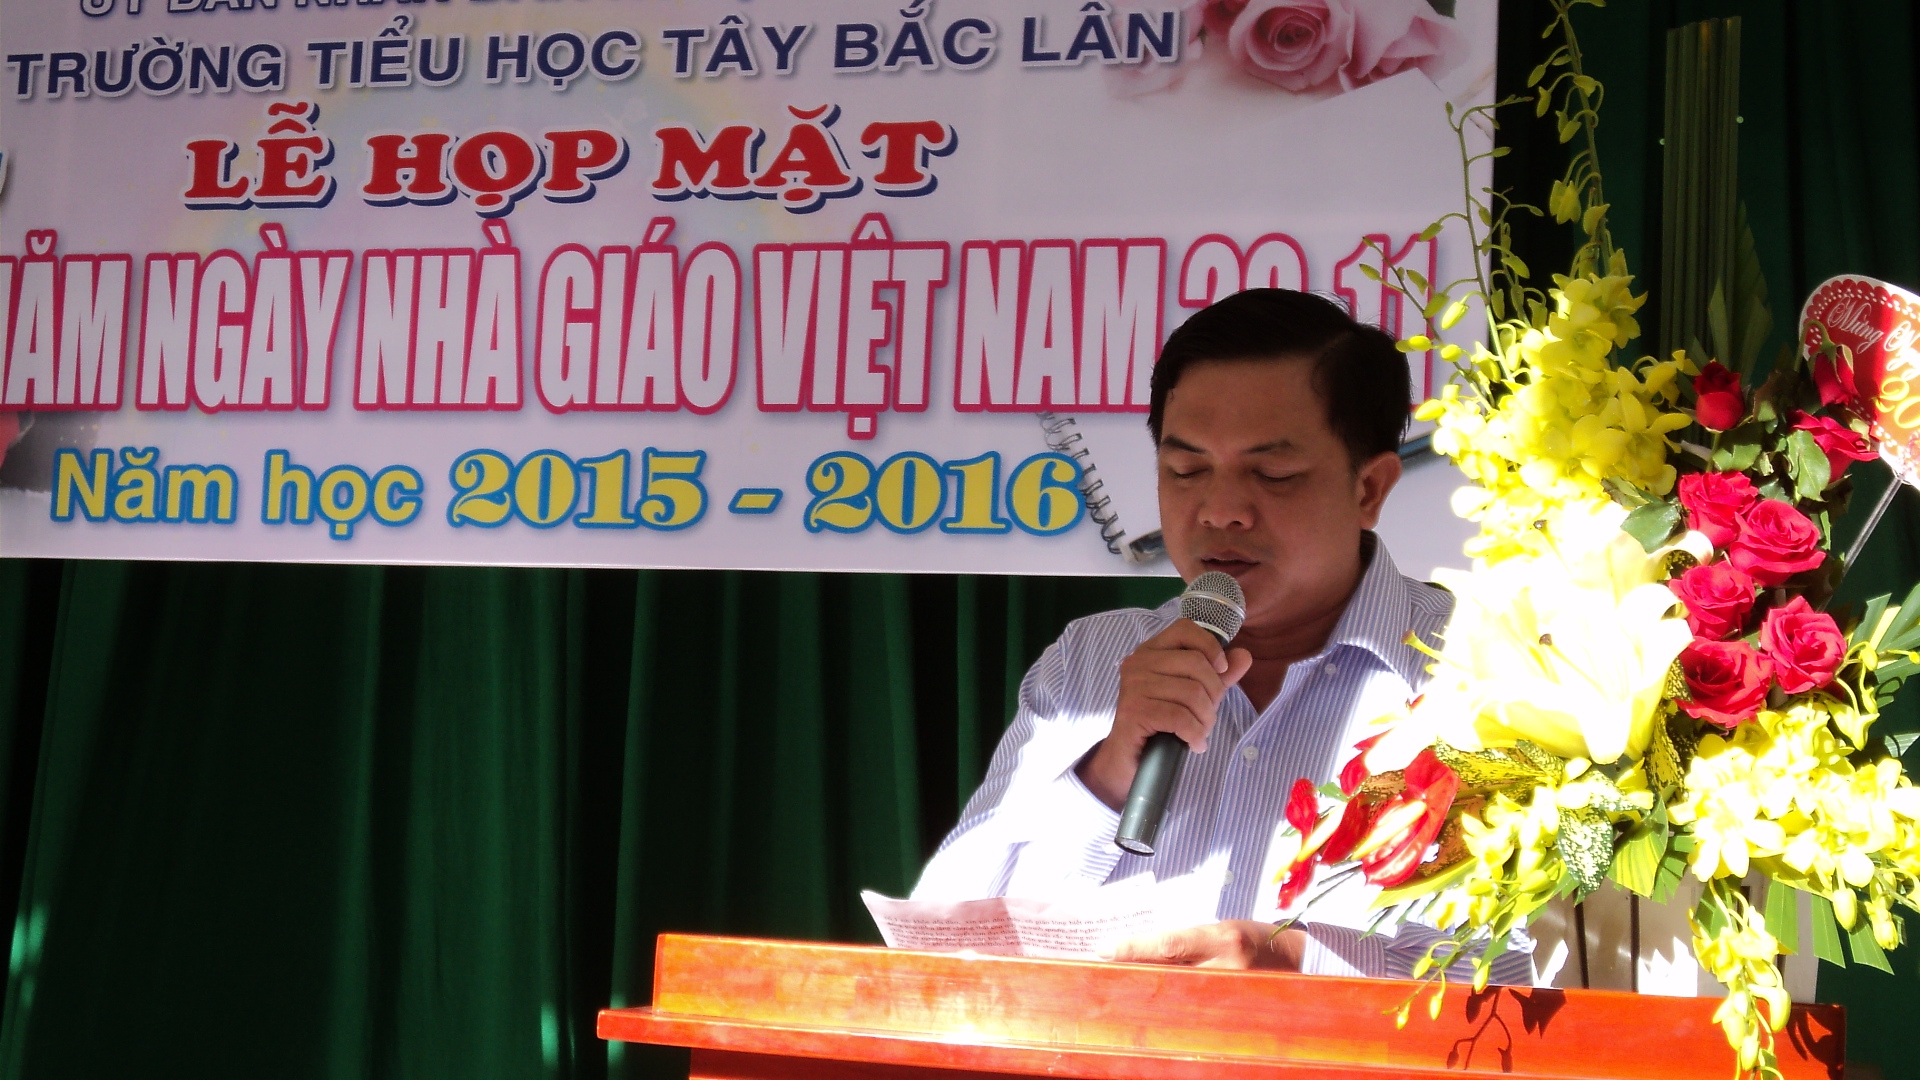  Ông Phó Chủ tịch Nguyễn Phước Thành người ra công văn cấm treo cờ Phật đản